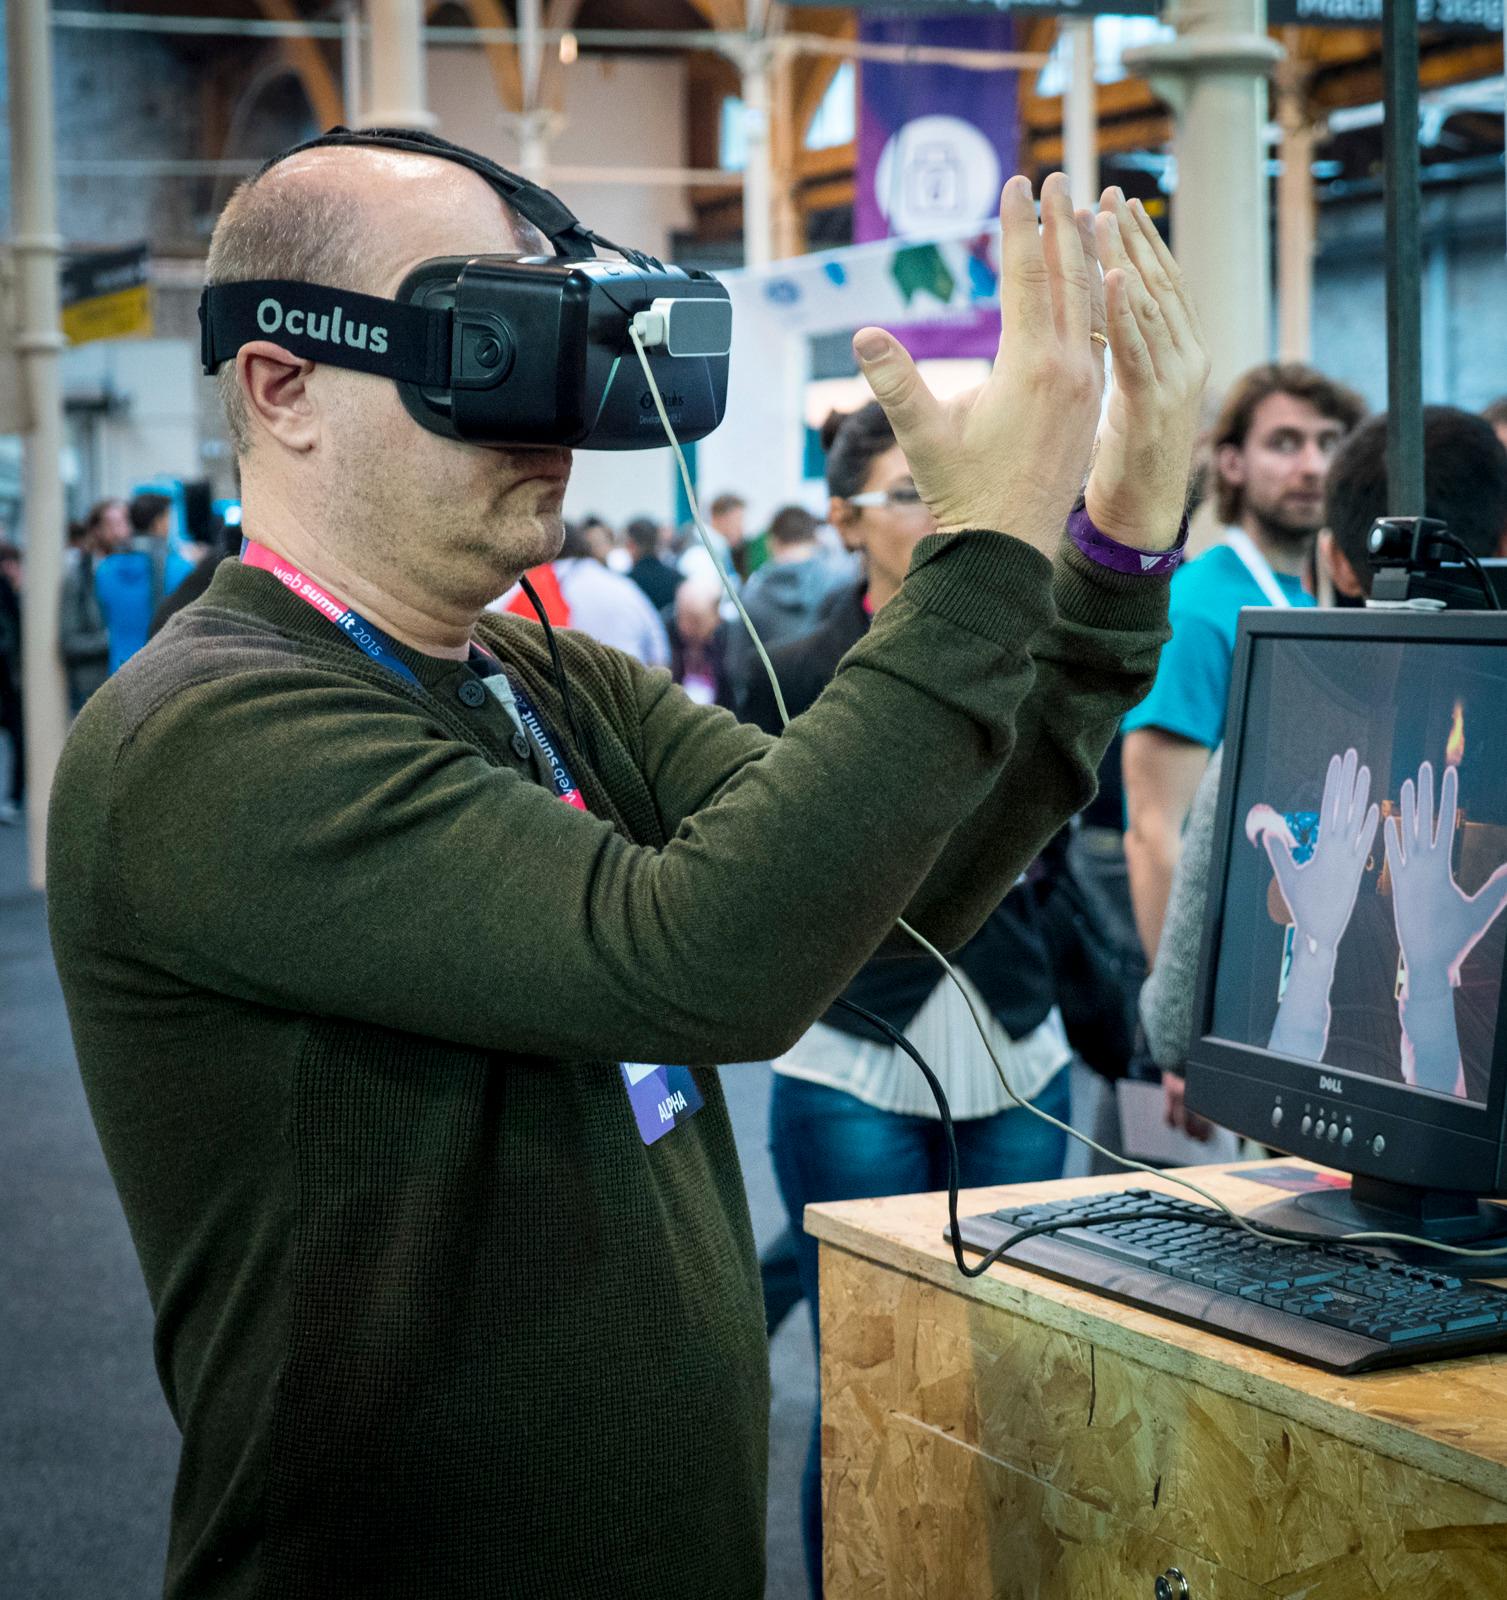 Flere av oppstartsselskapene som stilte ut på Web Summit jobbet med utstyr for virtuel virkelighet, så det kan se ut til at økosystemet rundt hodesettene vil vokse raskt. Foto: Kristoffer Møllevik, Tek.no